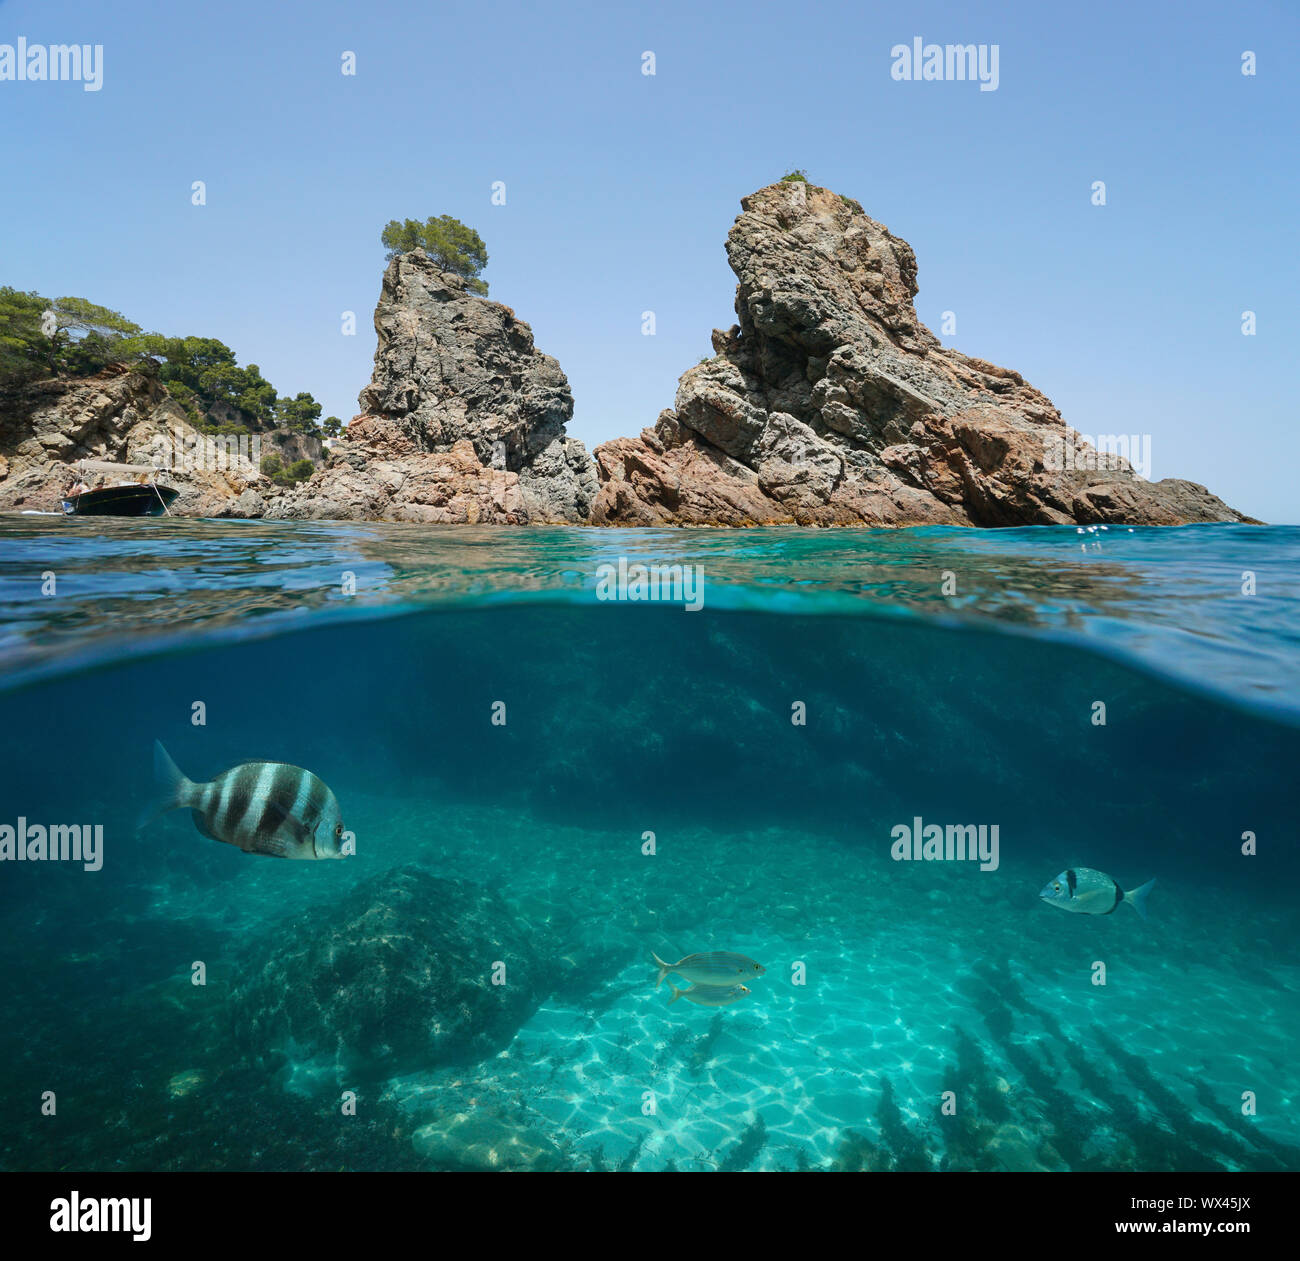 Felsigen kleinen Inseln mit einigen Fischen unter Wasser, Mittelmeer, Spanien, Costa Brava, Katalonien, Calella de Palafrugell, geteilte Ansicht Hälfte über und unter Wasser Stockfoto